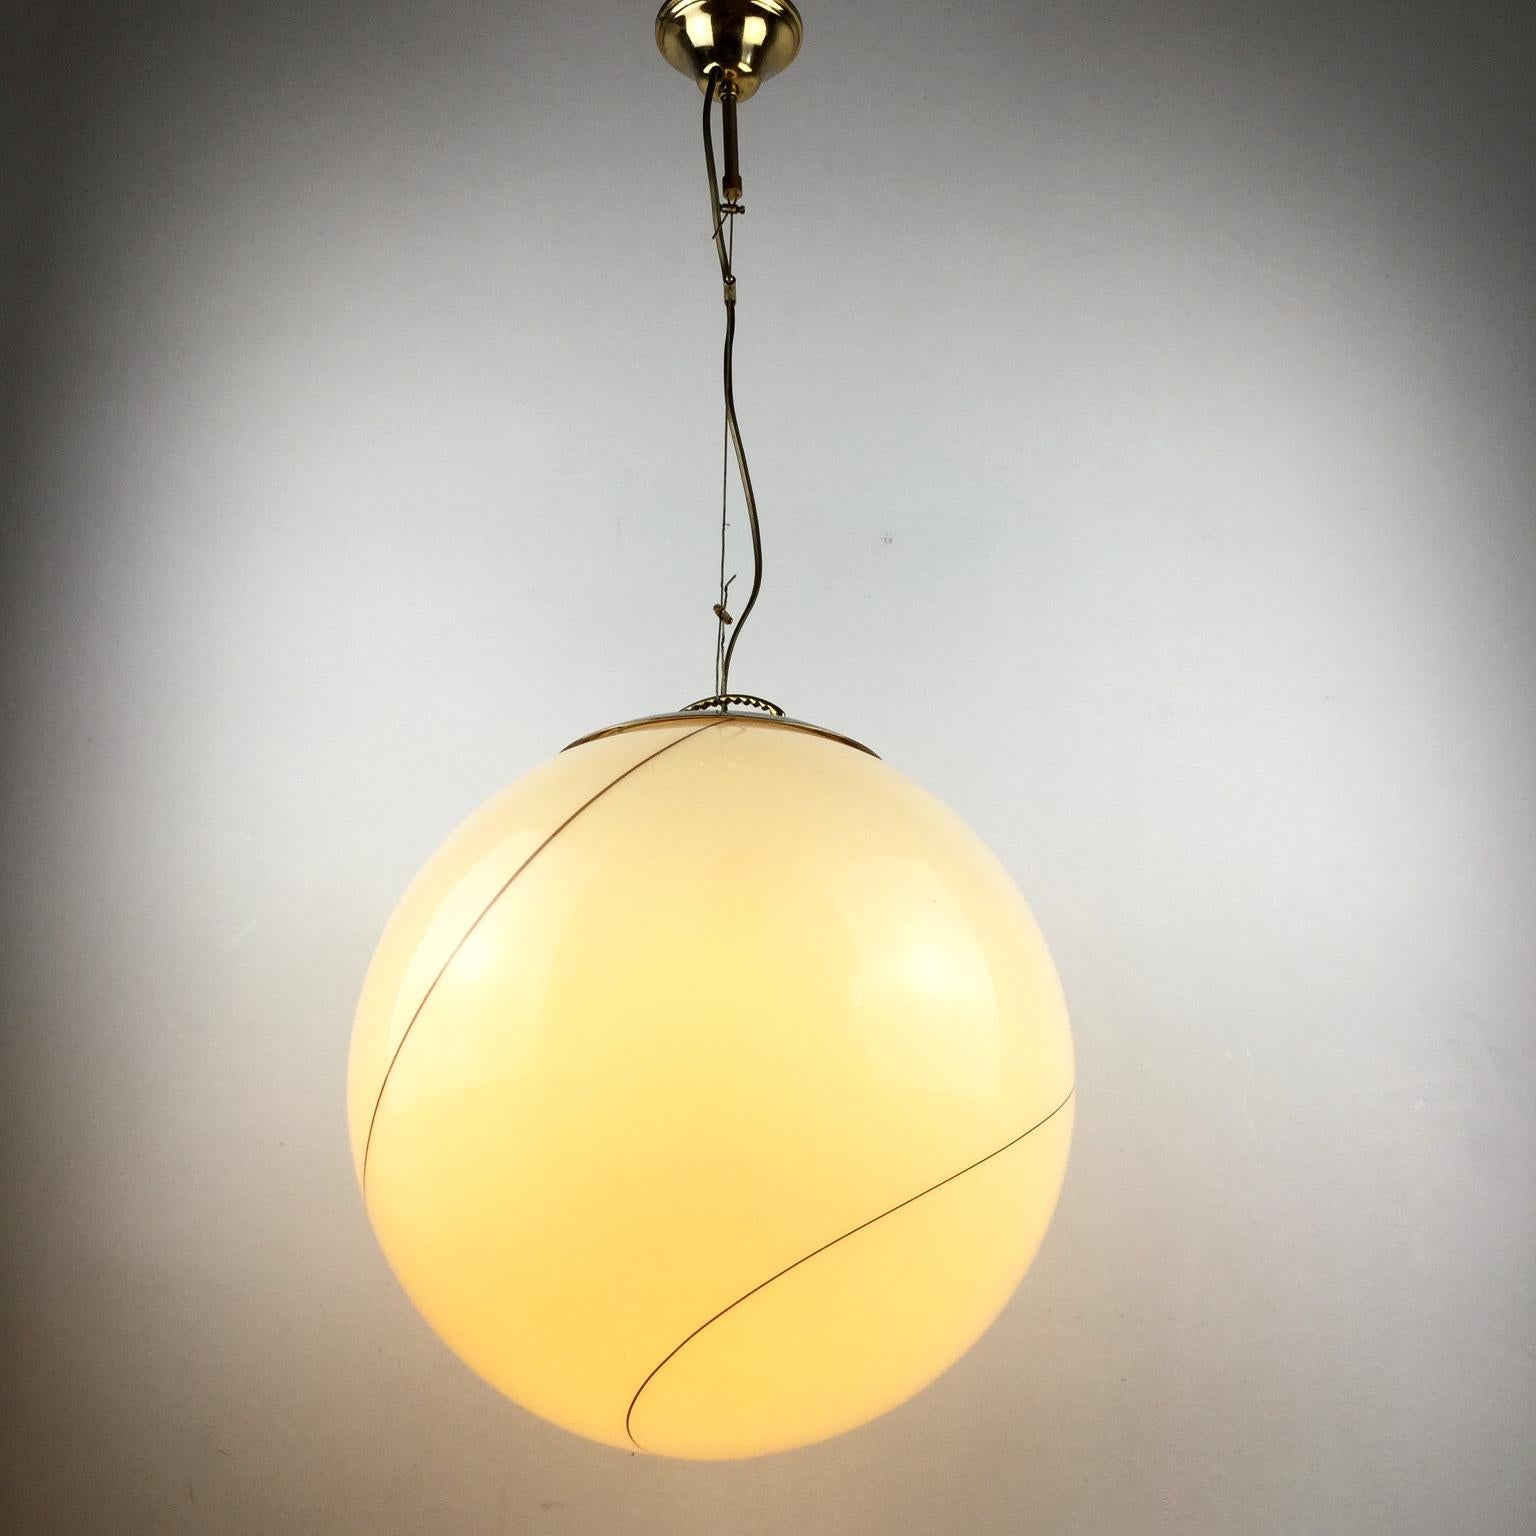 Late 20th Century 1980s Murano Italian Glass Globe Pendant Lamp Attributed to Seguso Vetri d'Arte